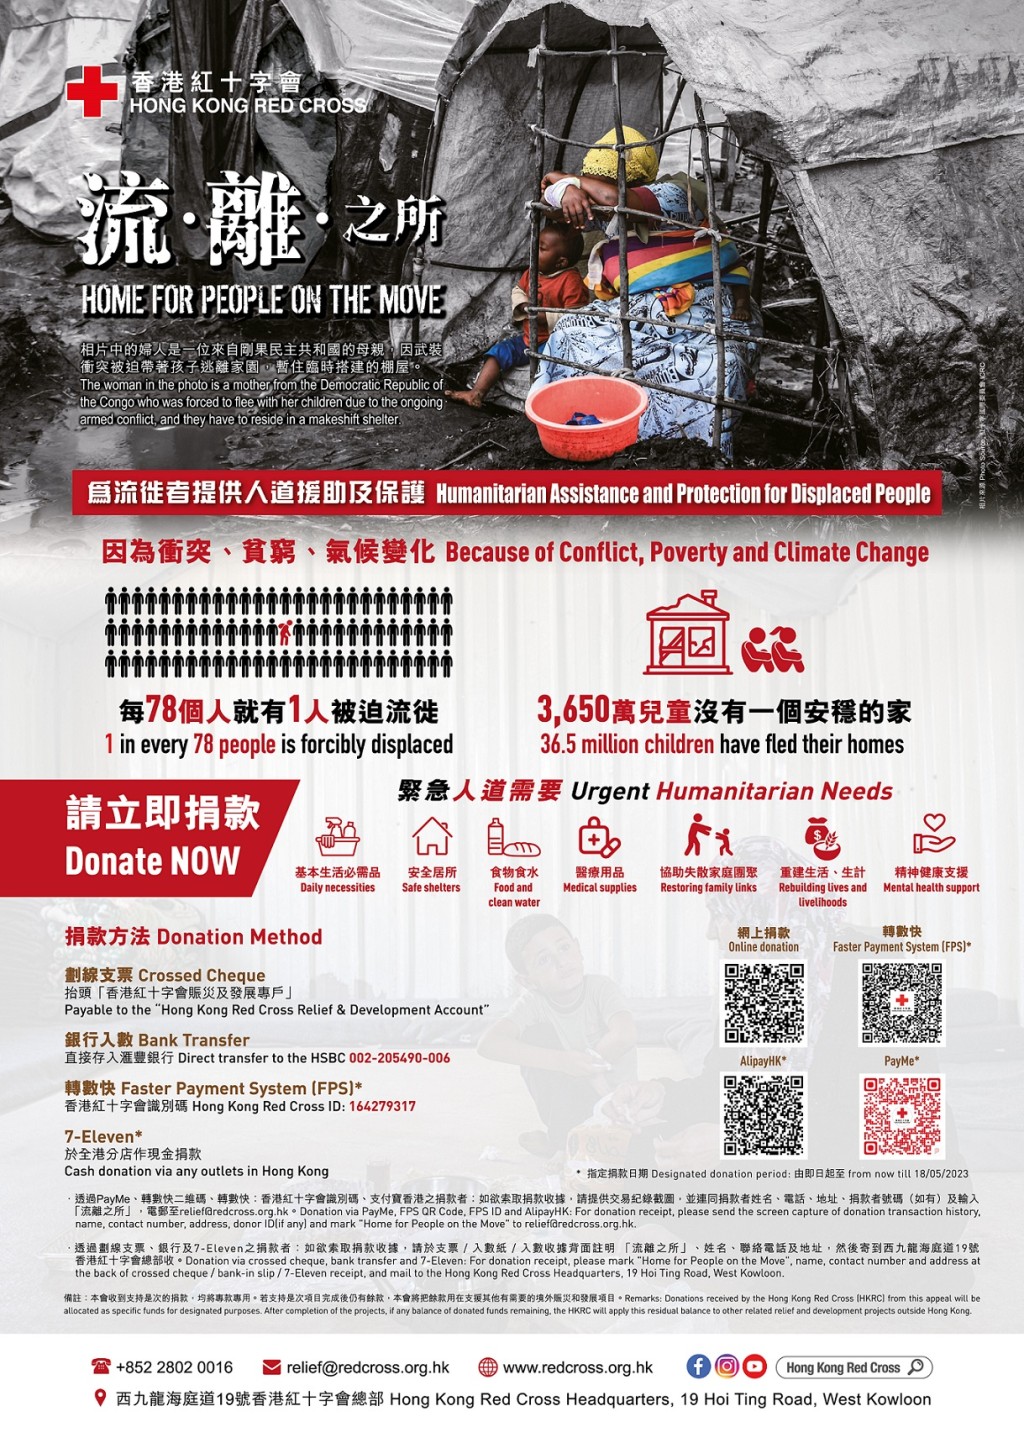 香港红十字会冀社会各界捐款支持「流‧离‧之所」，为流徒者提供人道援助及保护。香港红十字会